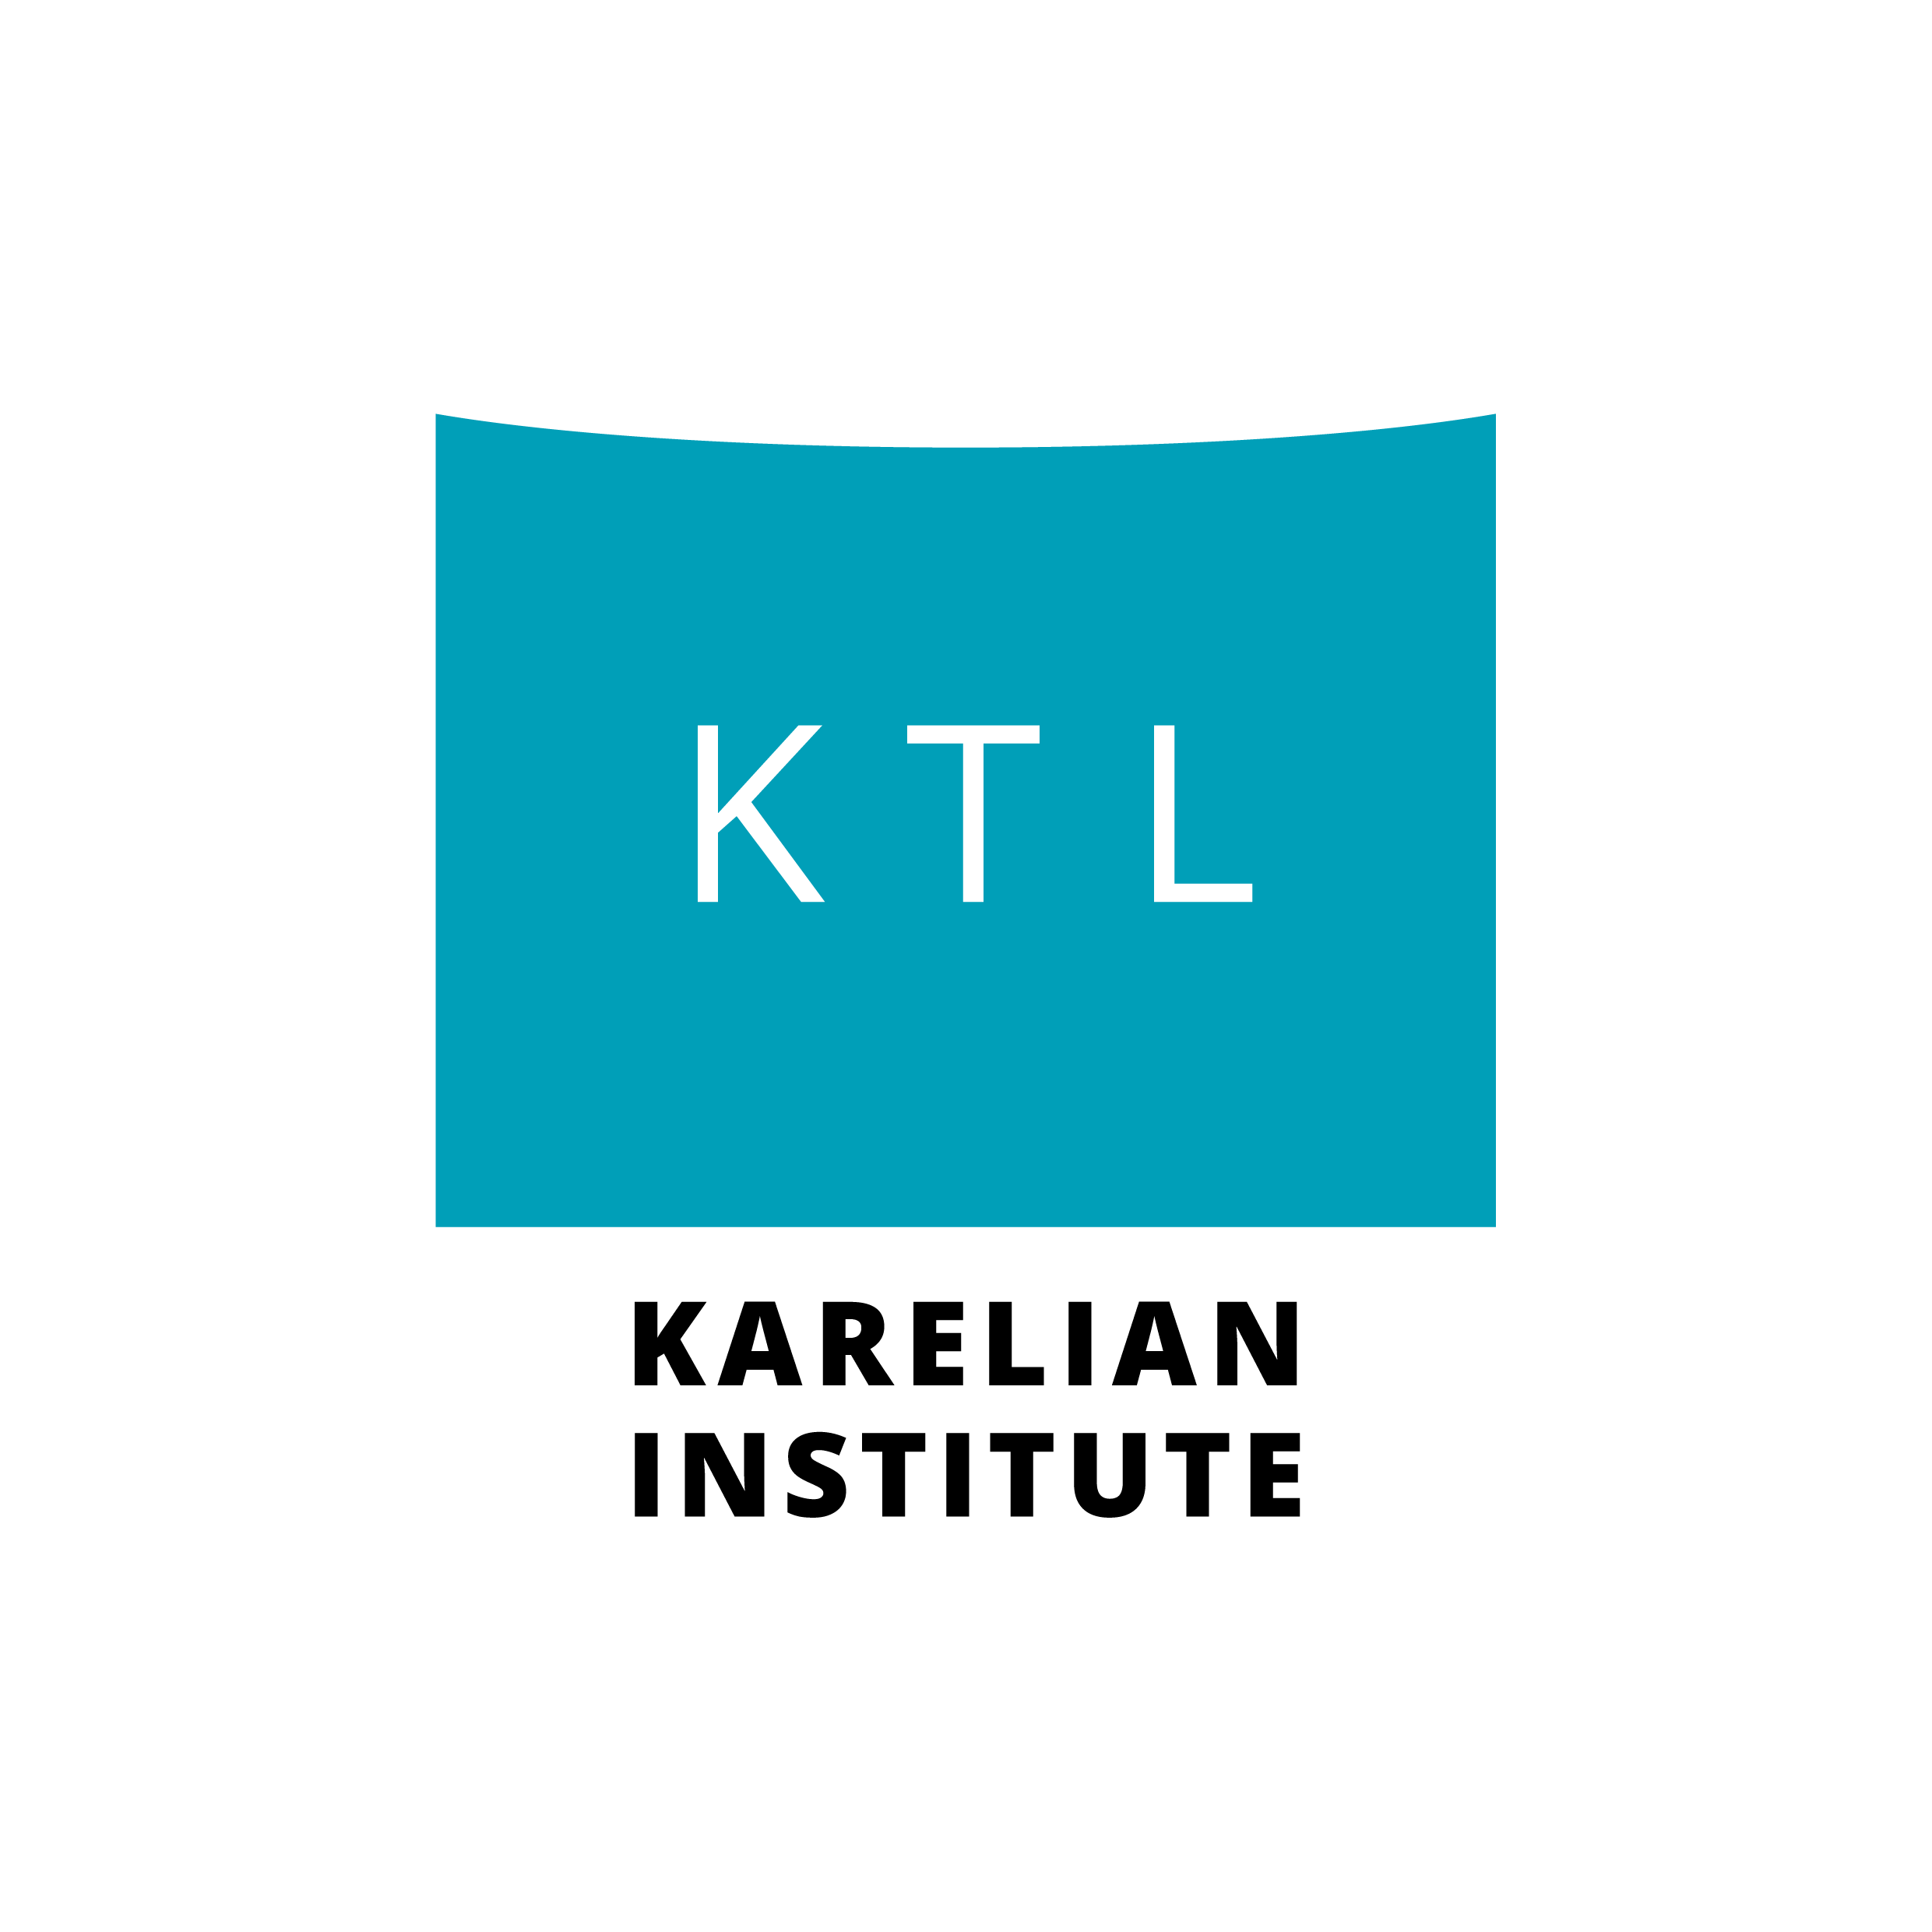 KTL logo